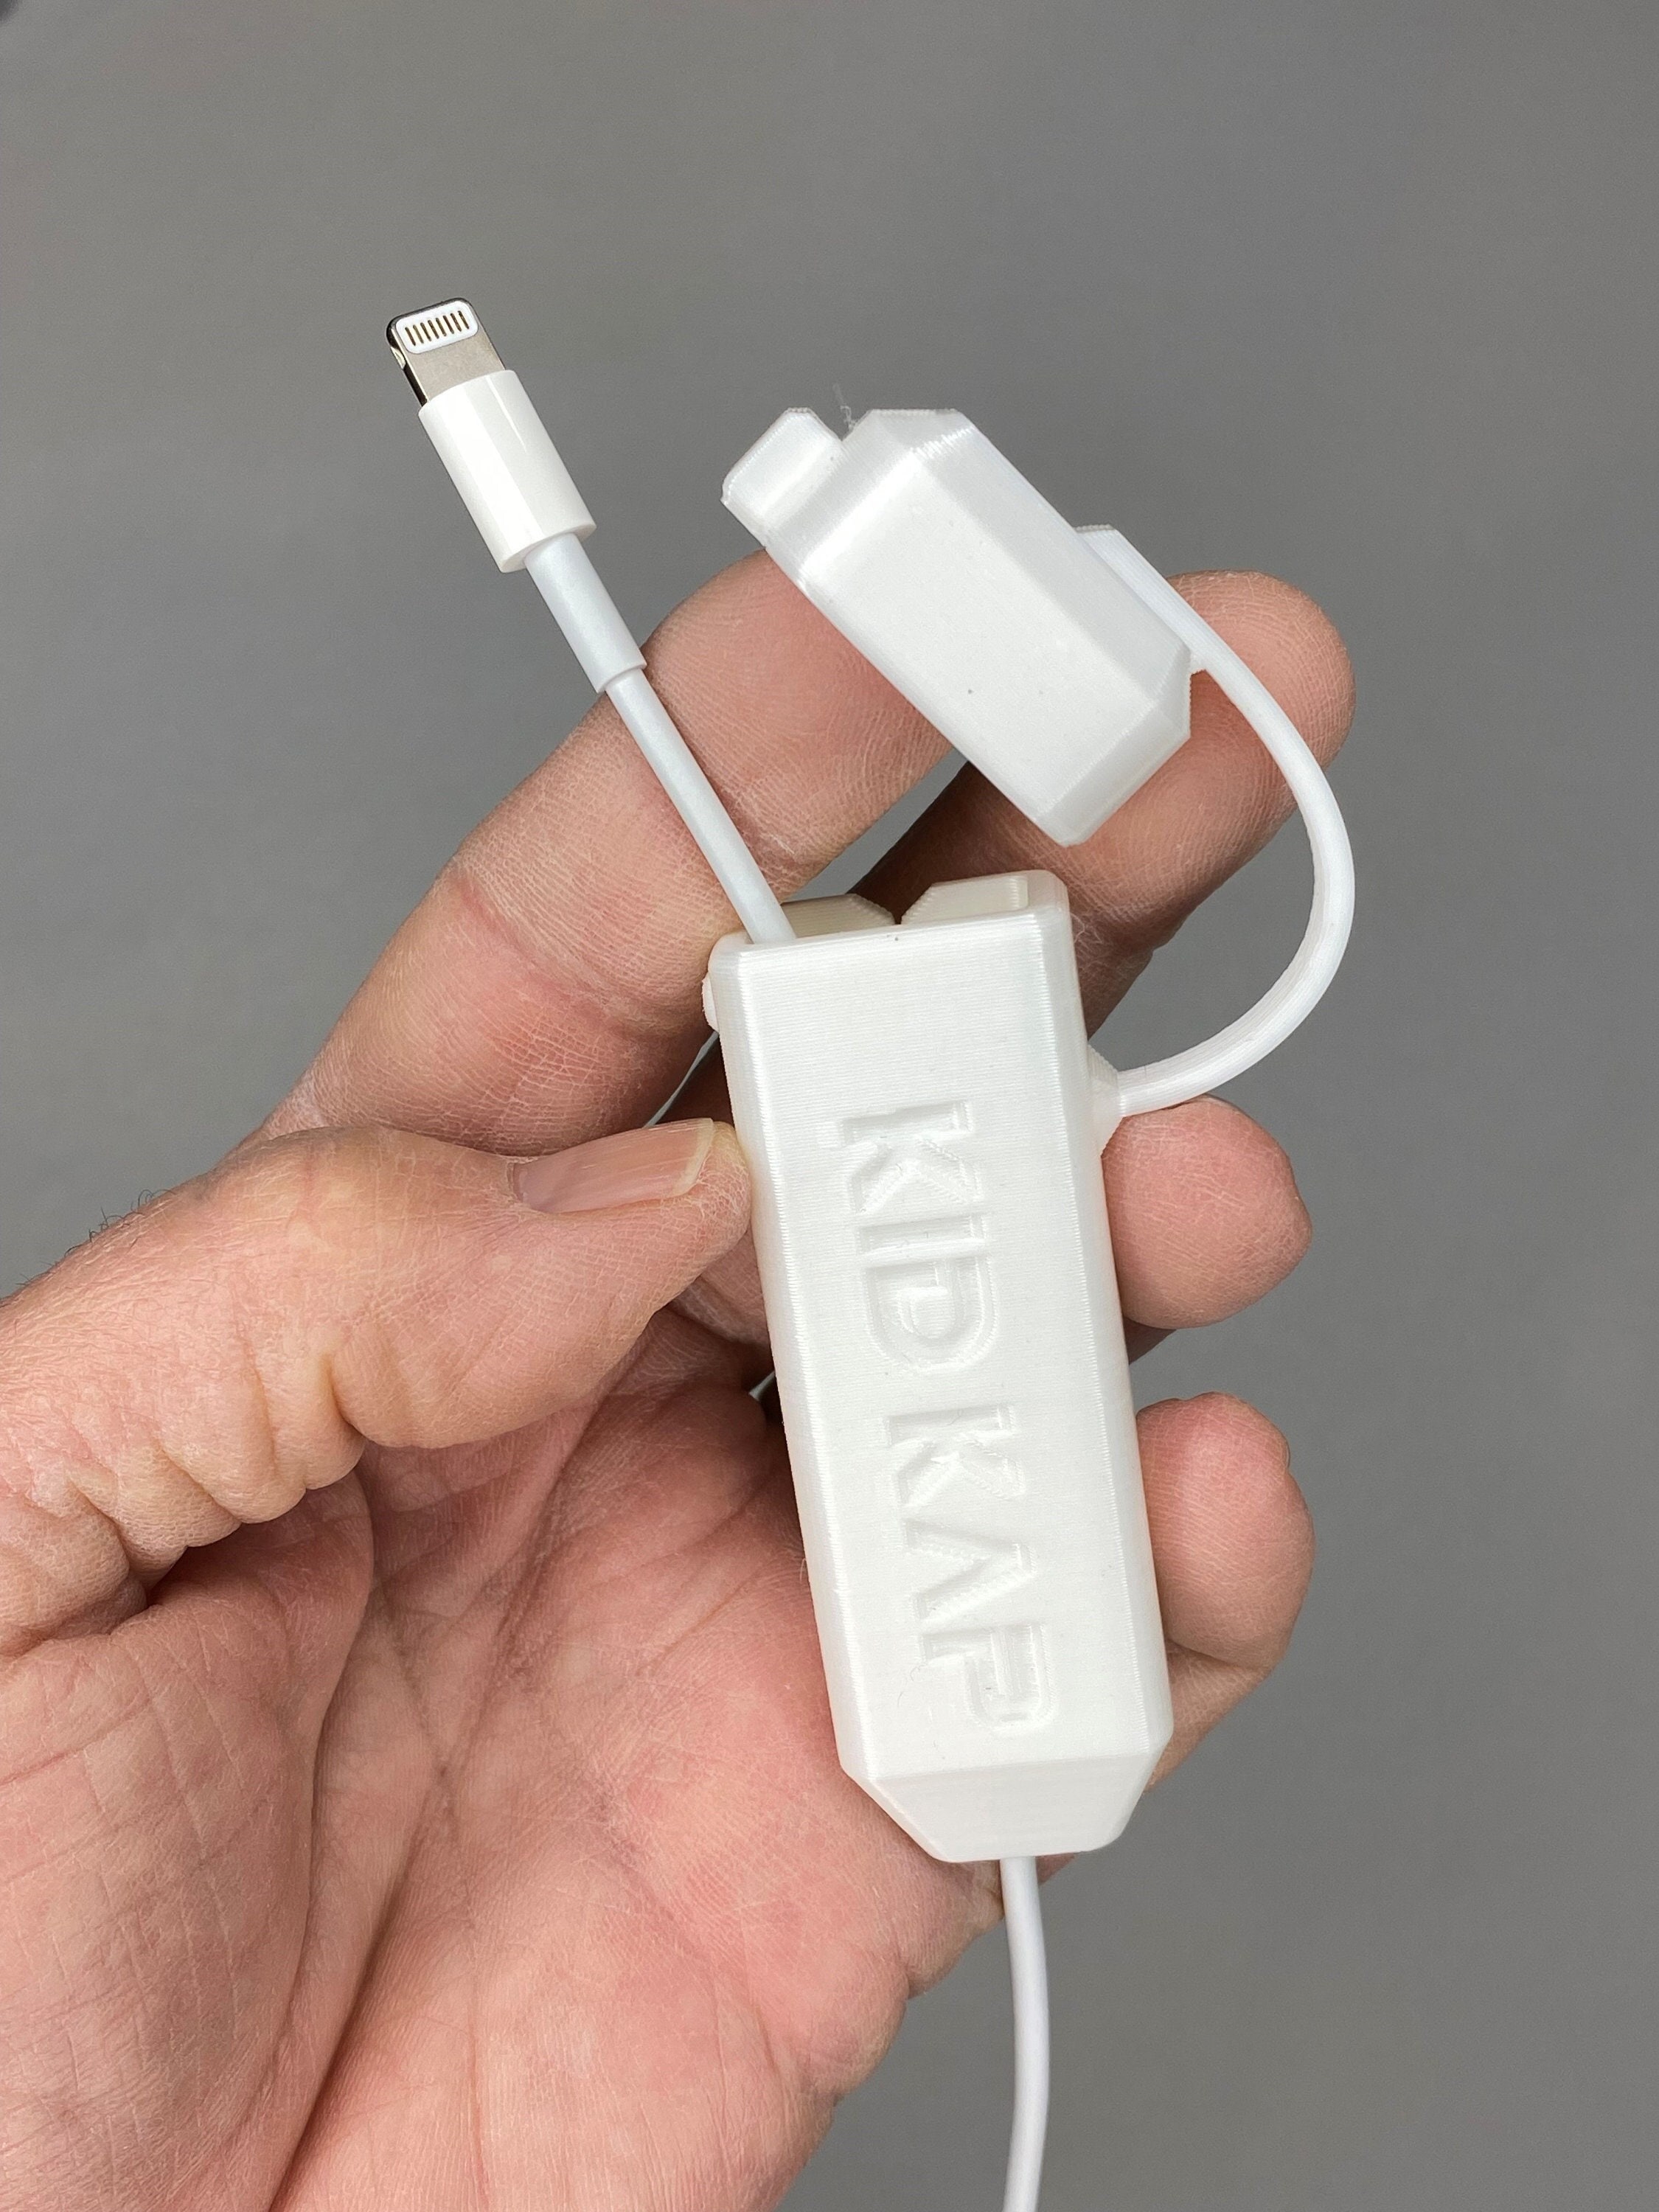 Adaptador Iphone Lightning a 3.5mm - Eco Tech El Salvador